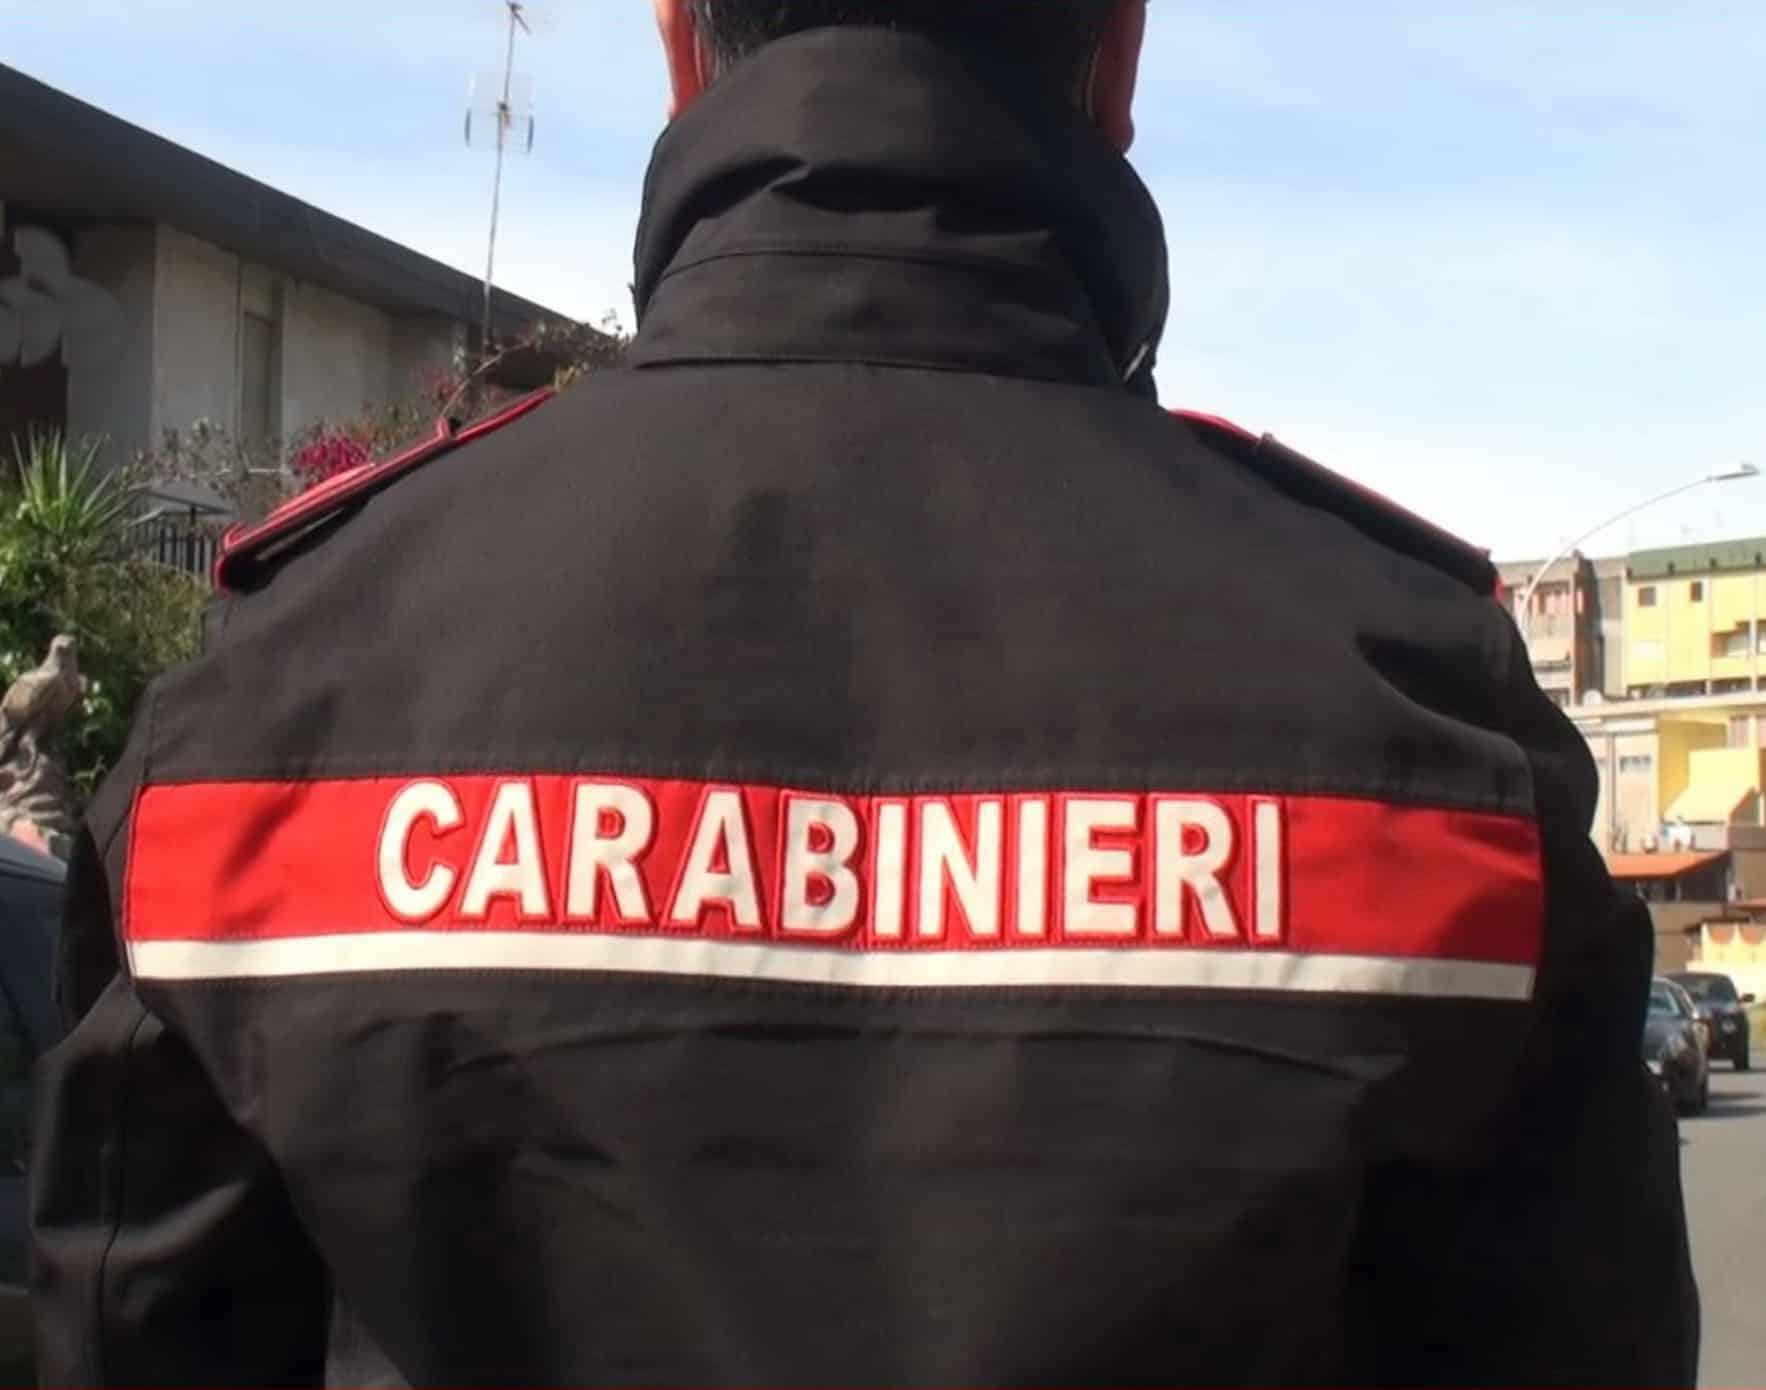 Catania, con una folle fuga cerca di scappare dai carabinieri: bloccato e denunciato 20enne senza patente